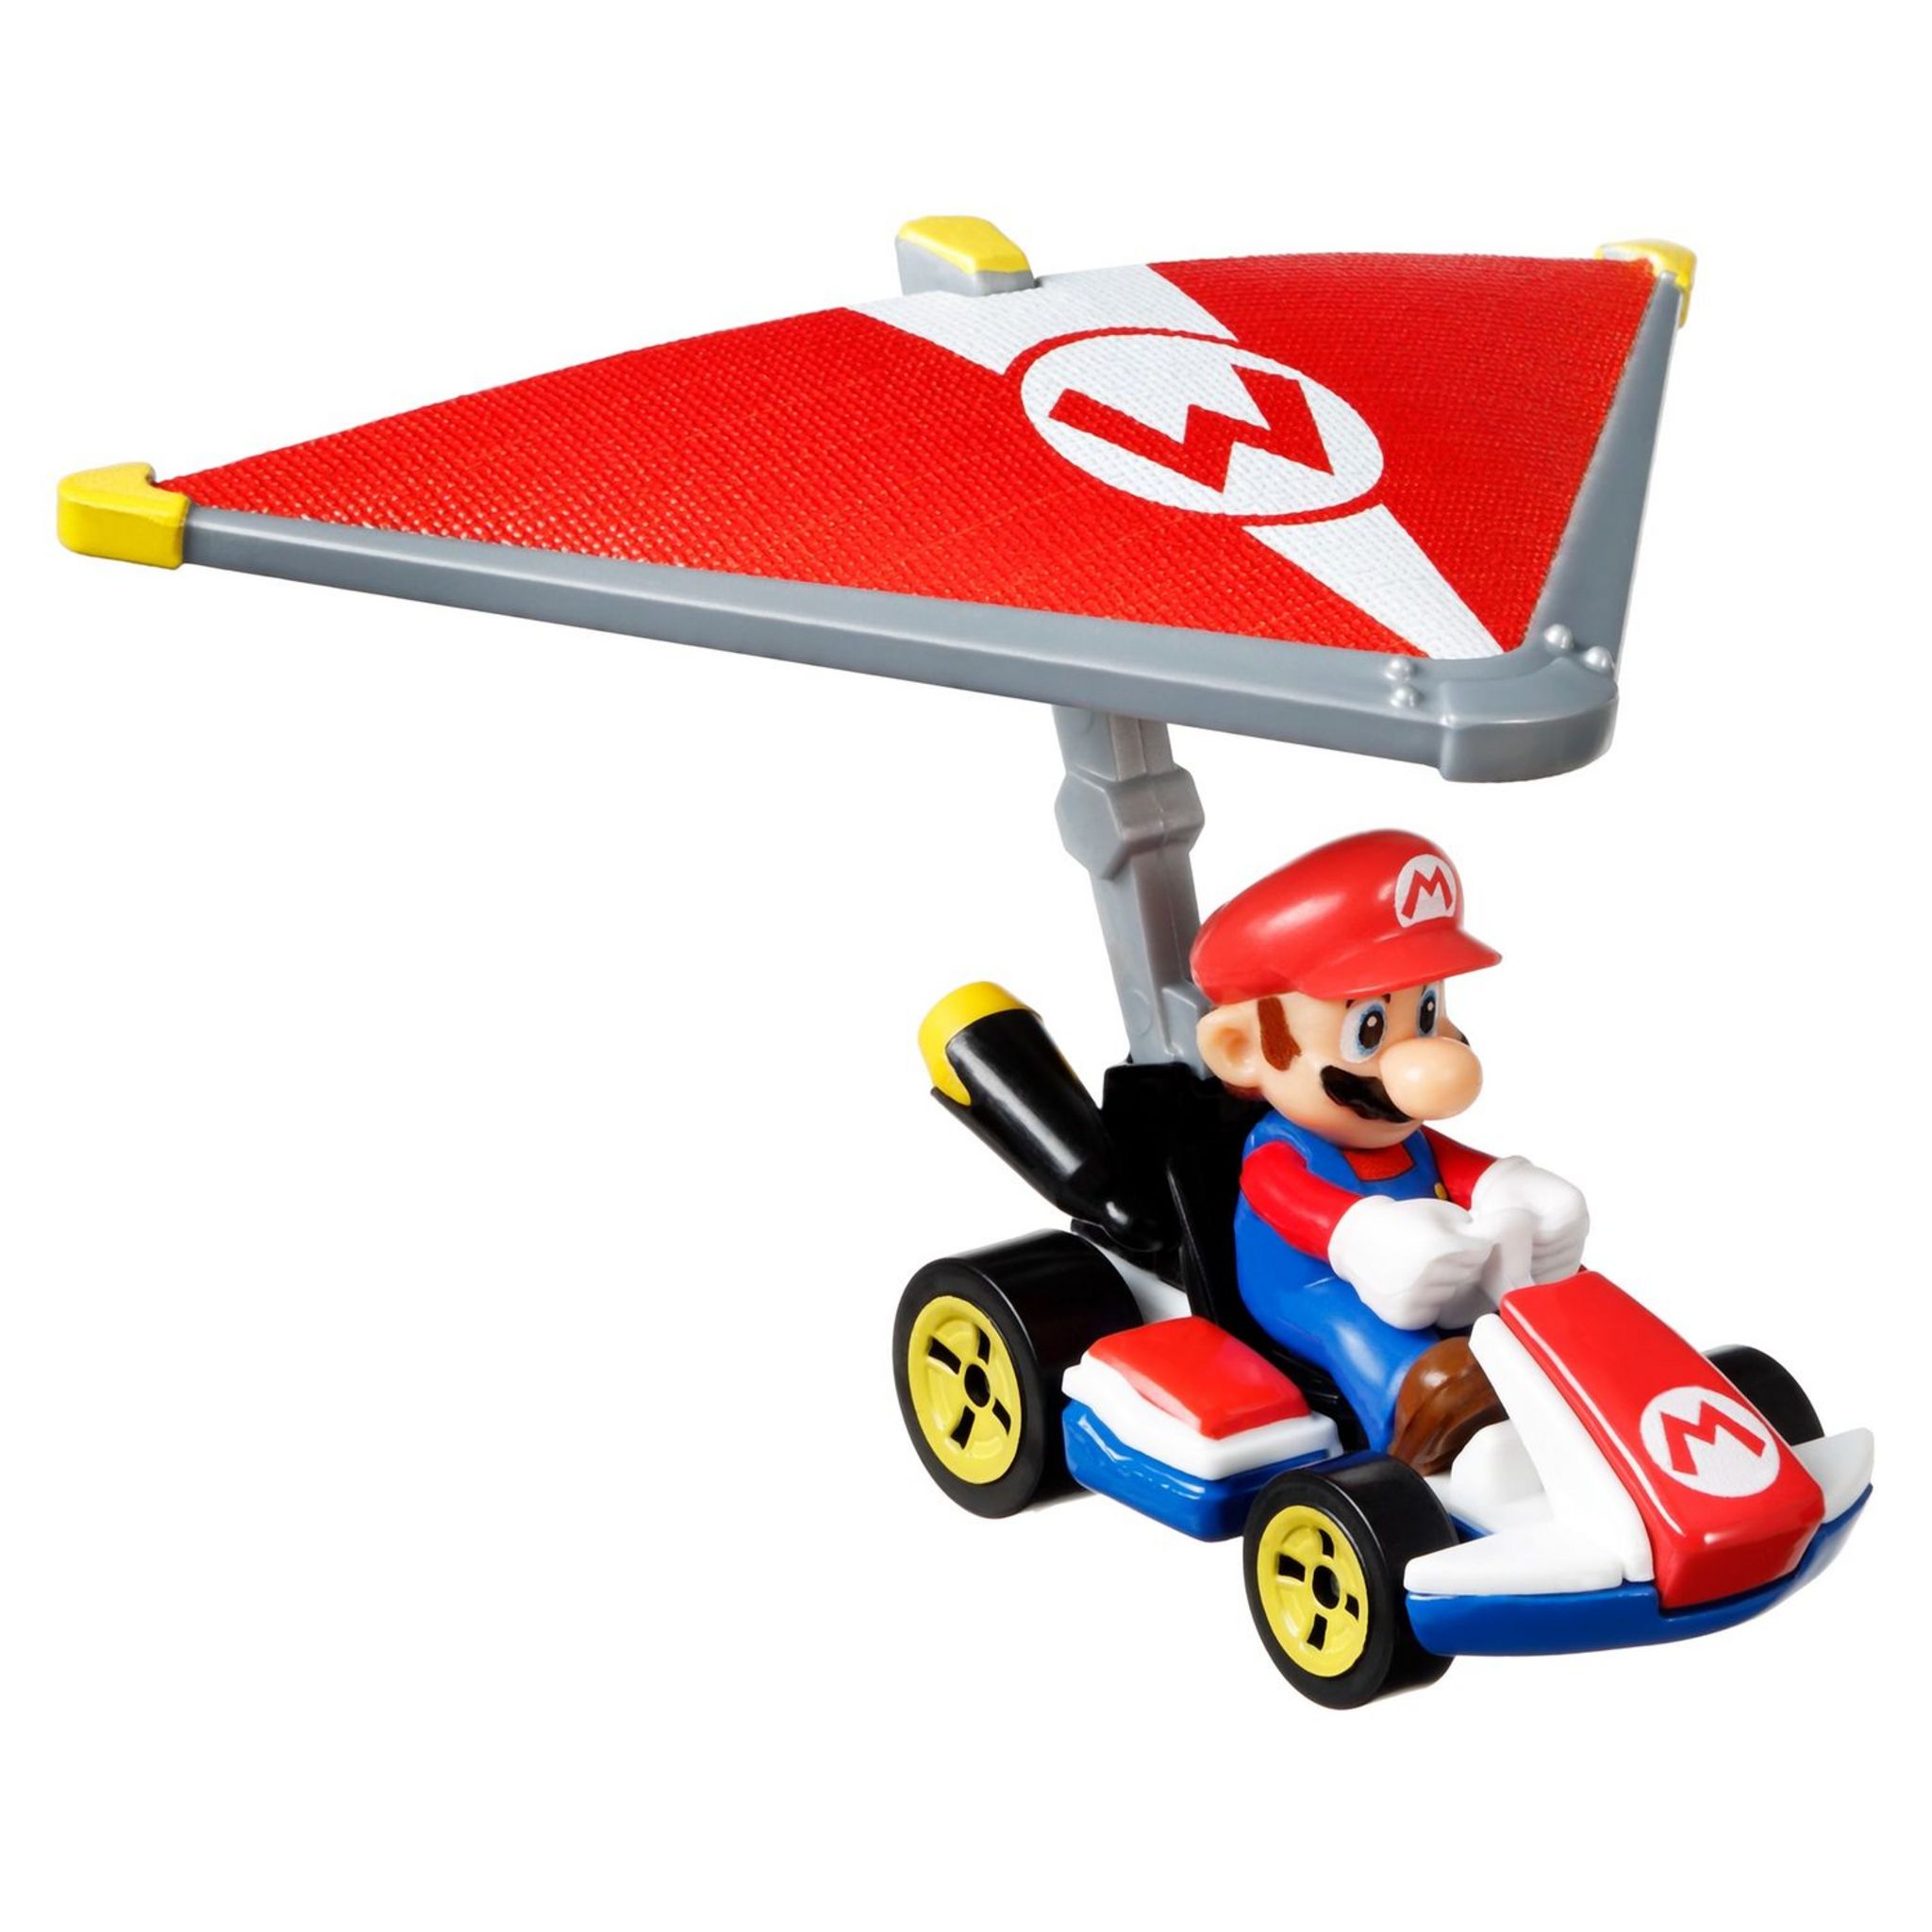 HOT WHEELS Mario Kart Aile Bowser Petite Voiture - La Poste